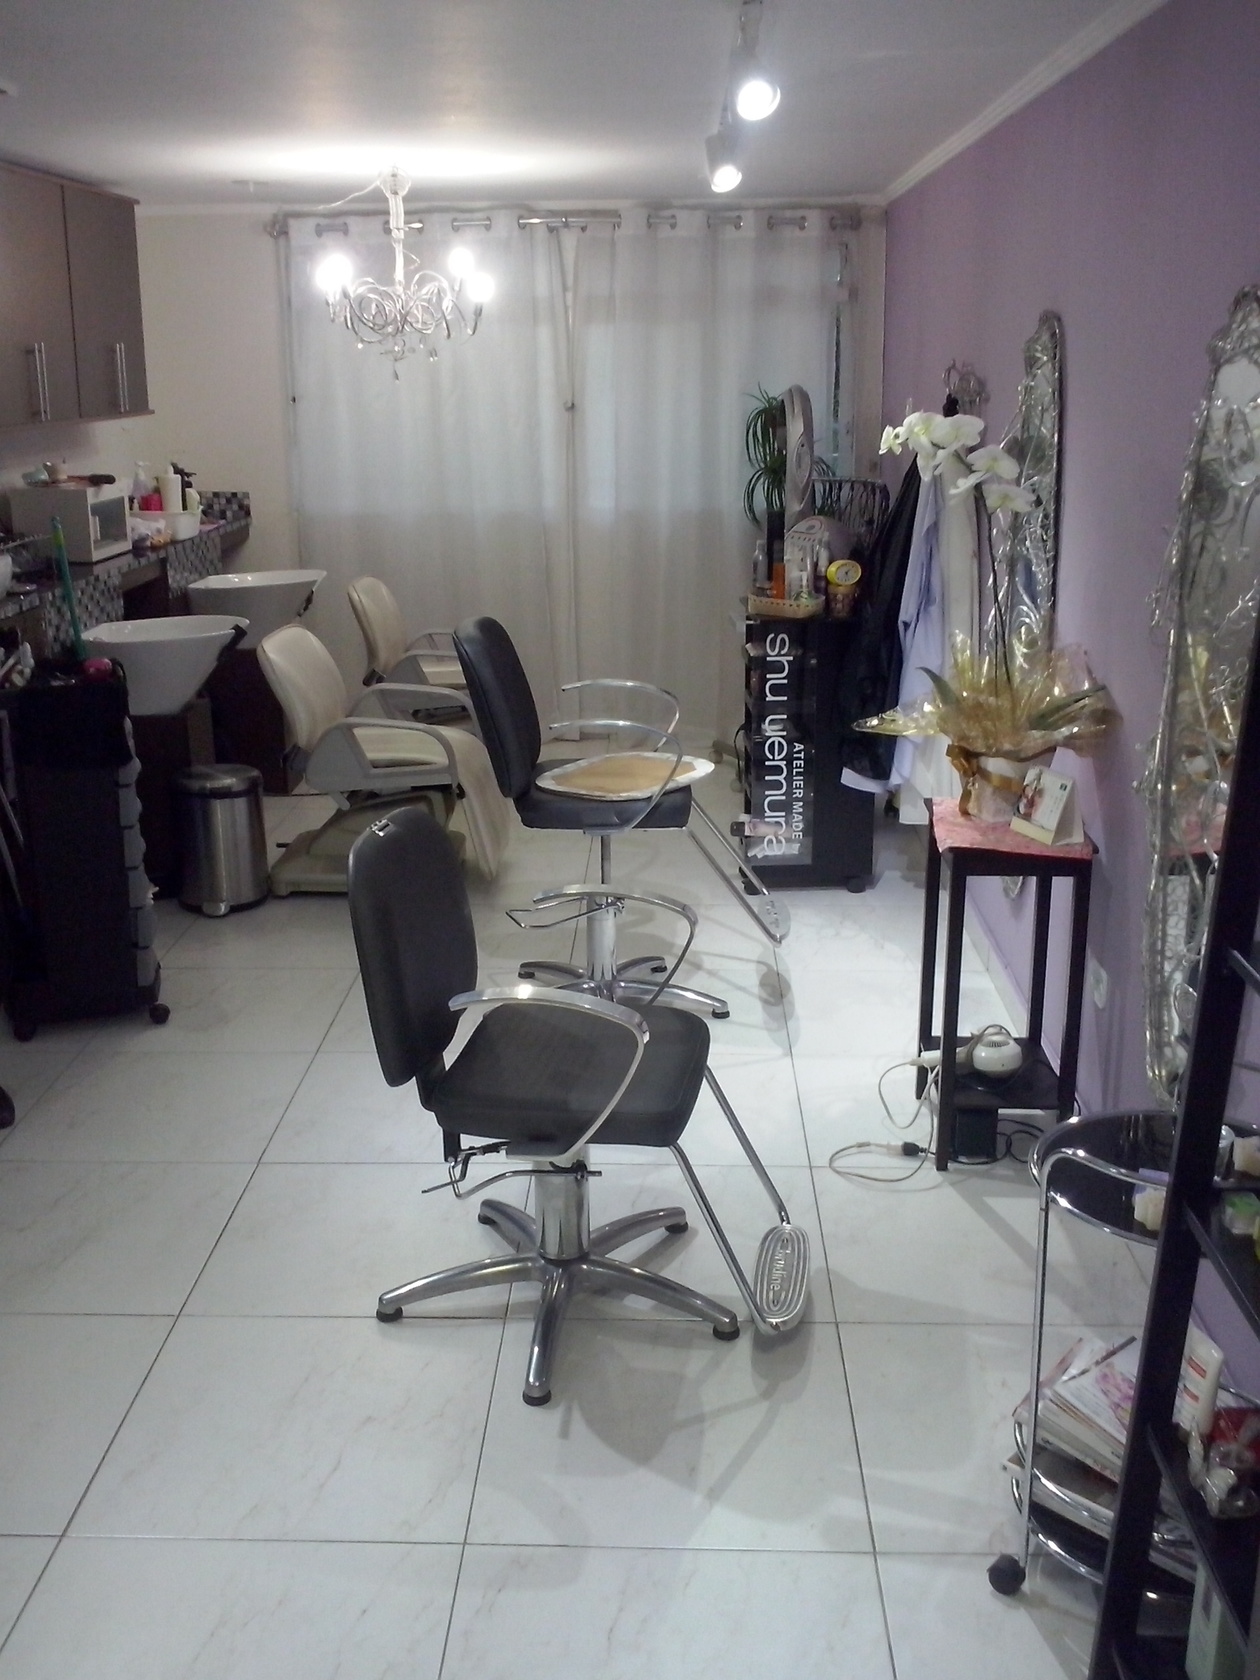 ユリさんの美容院 | サンパウロ在住ノブさんのおすすめエリア・地区